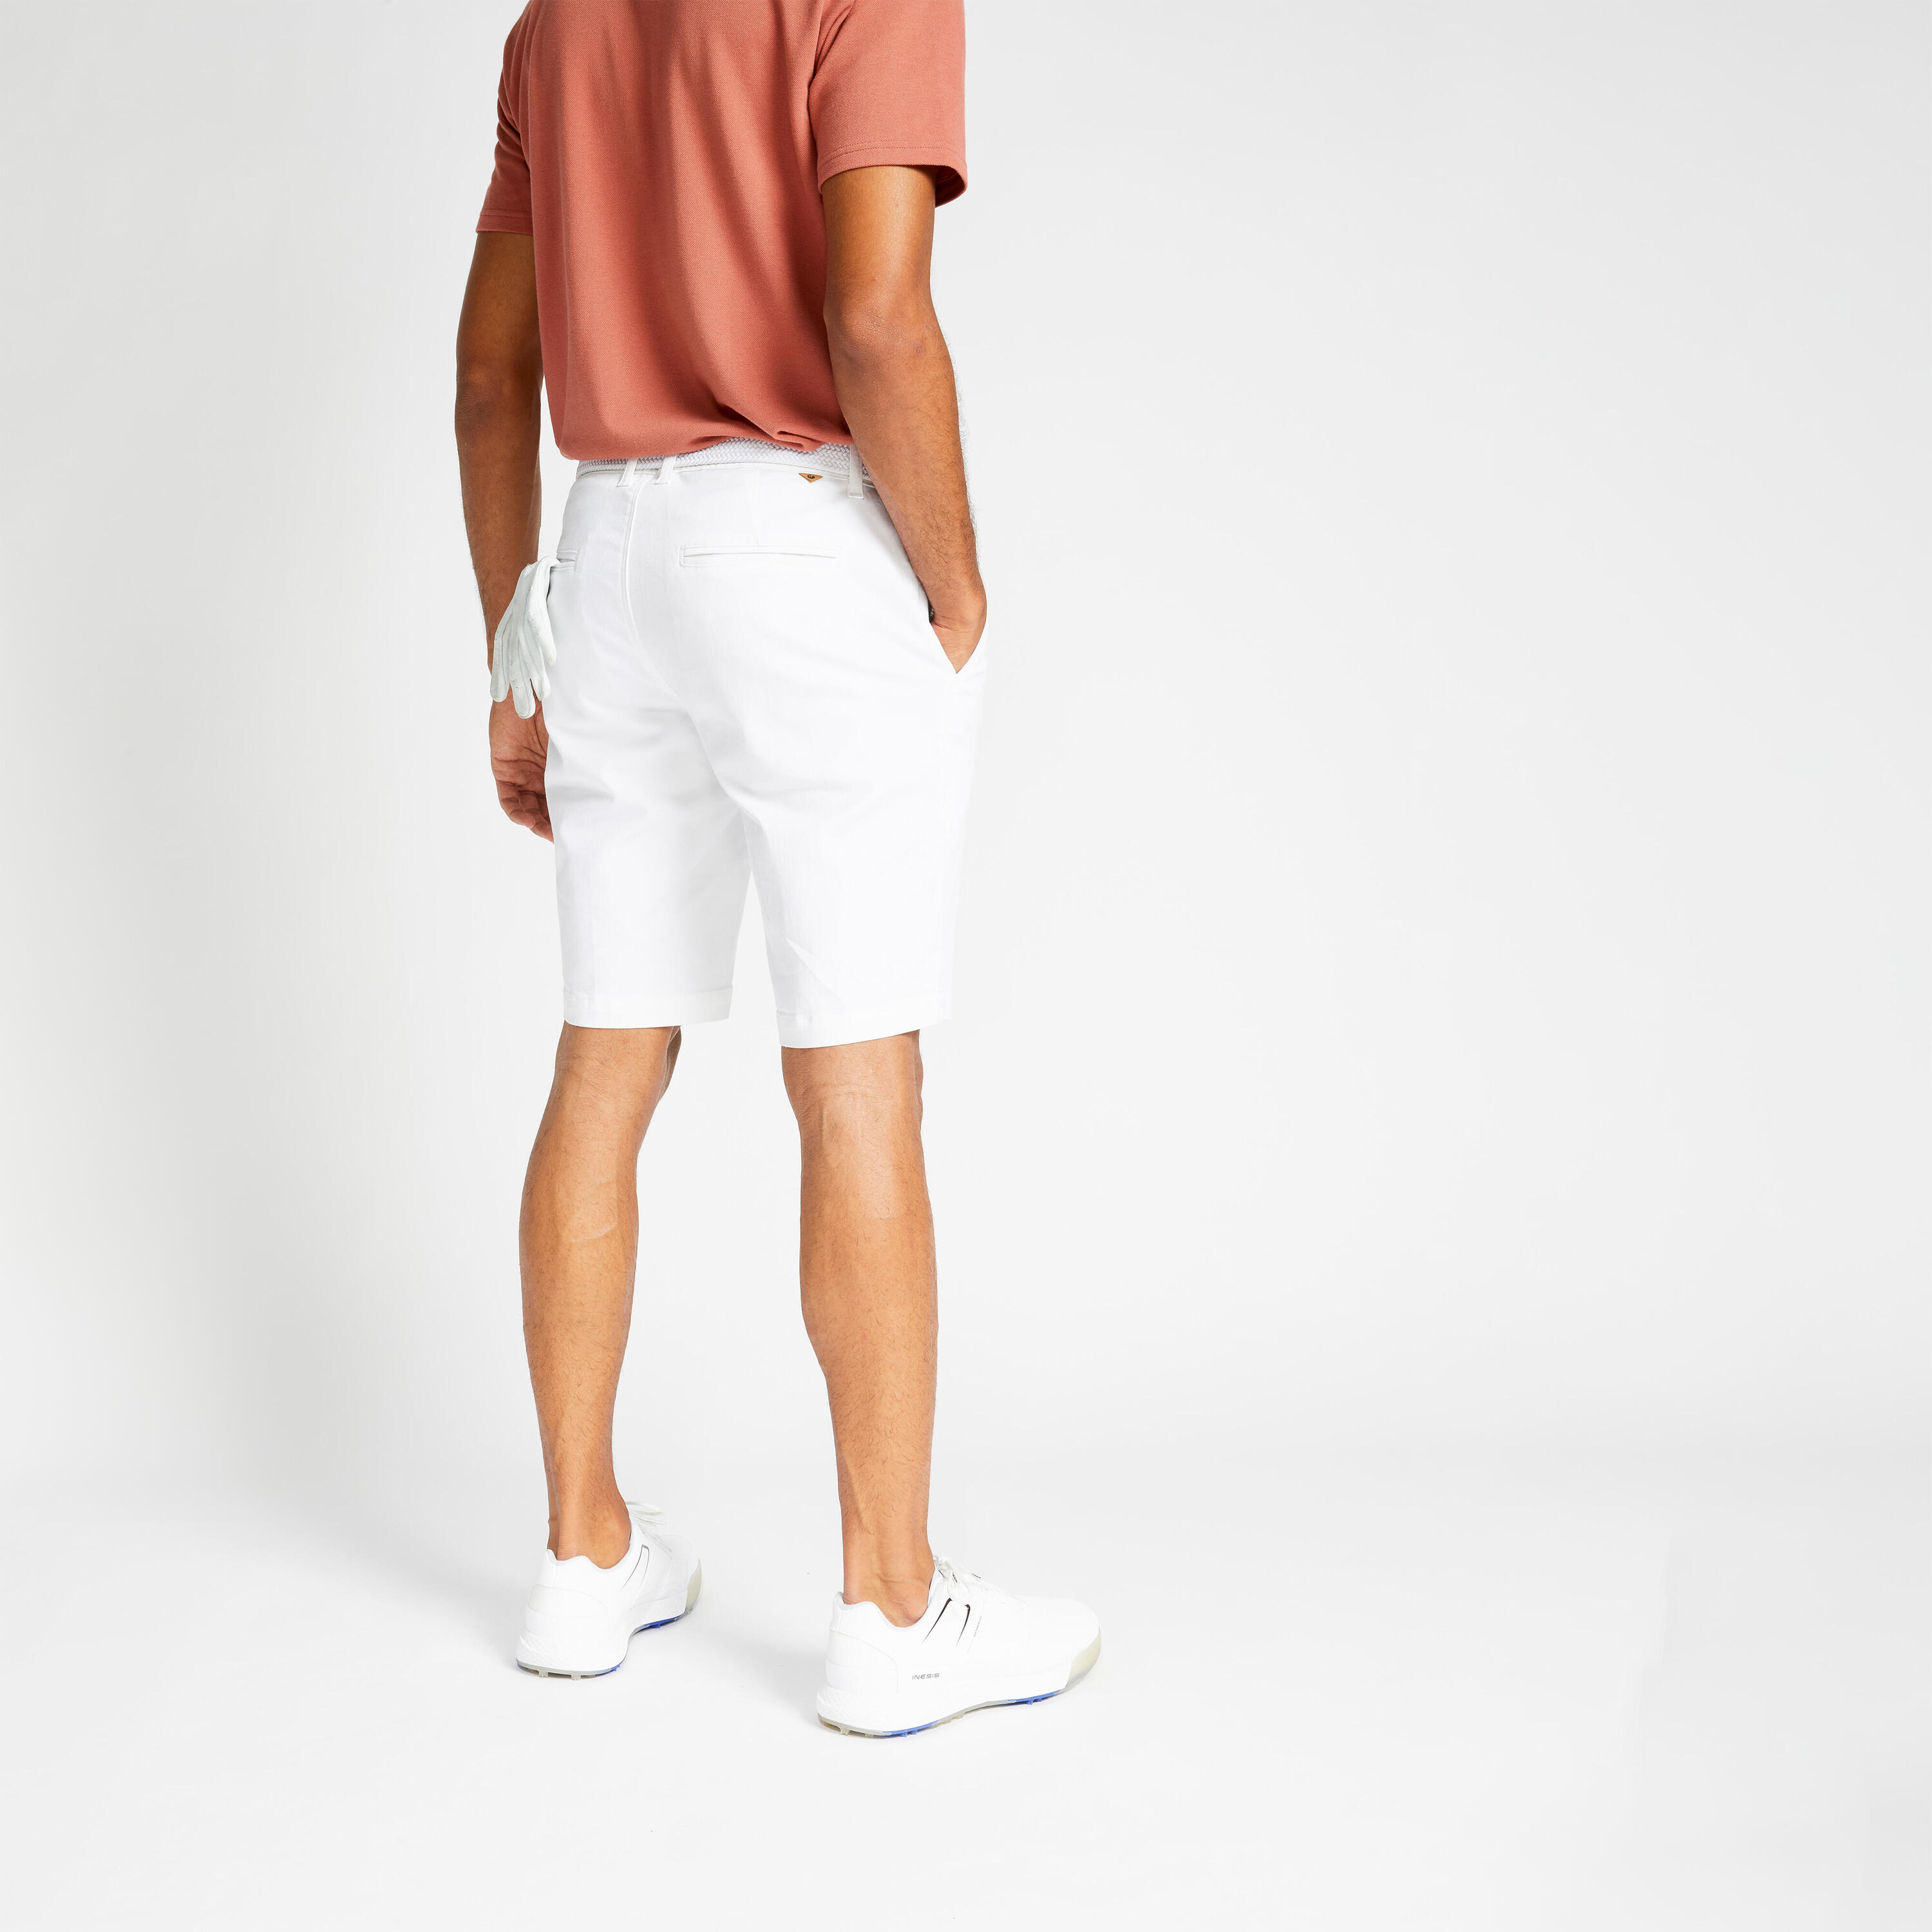 Men's golf chino shorts - MW500 white 2/6